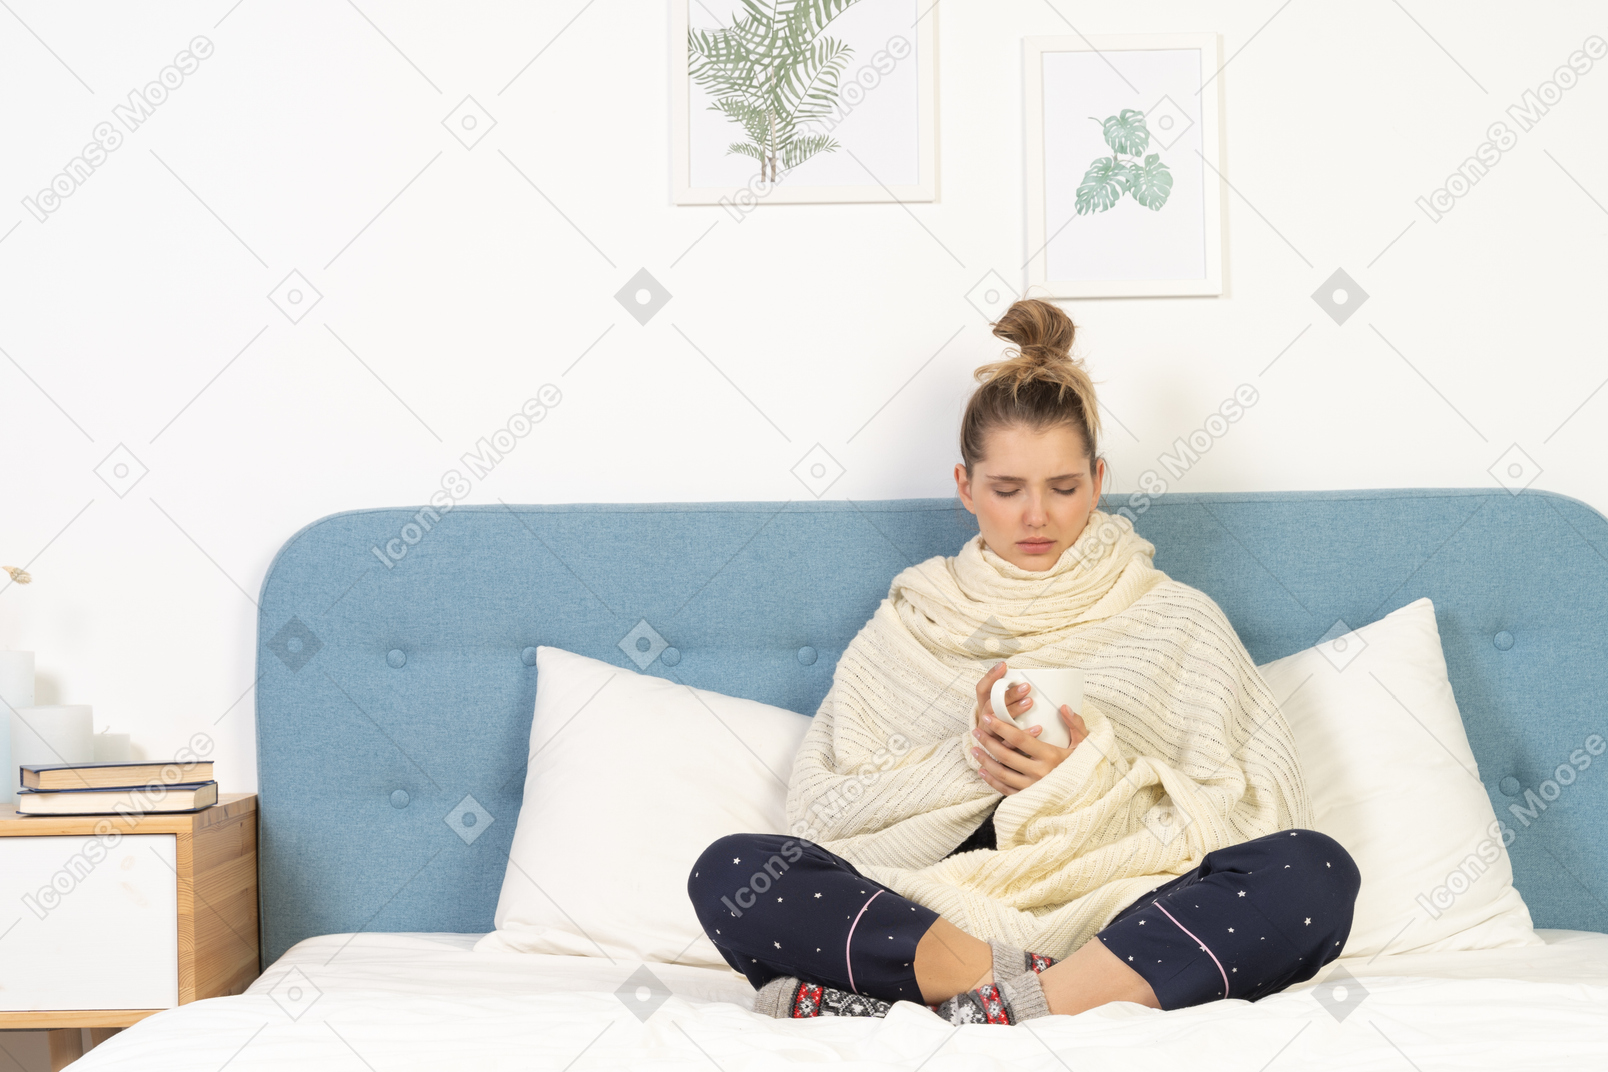 Vista frontal de uma jovem doente enrolada em um cobertor branco ficando na cama